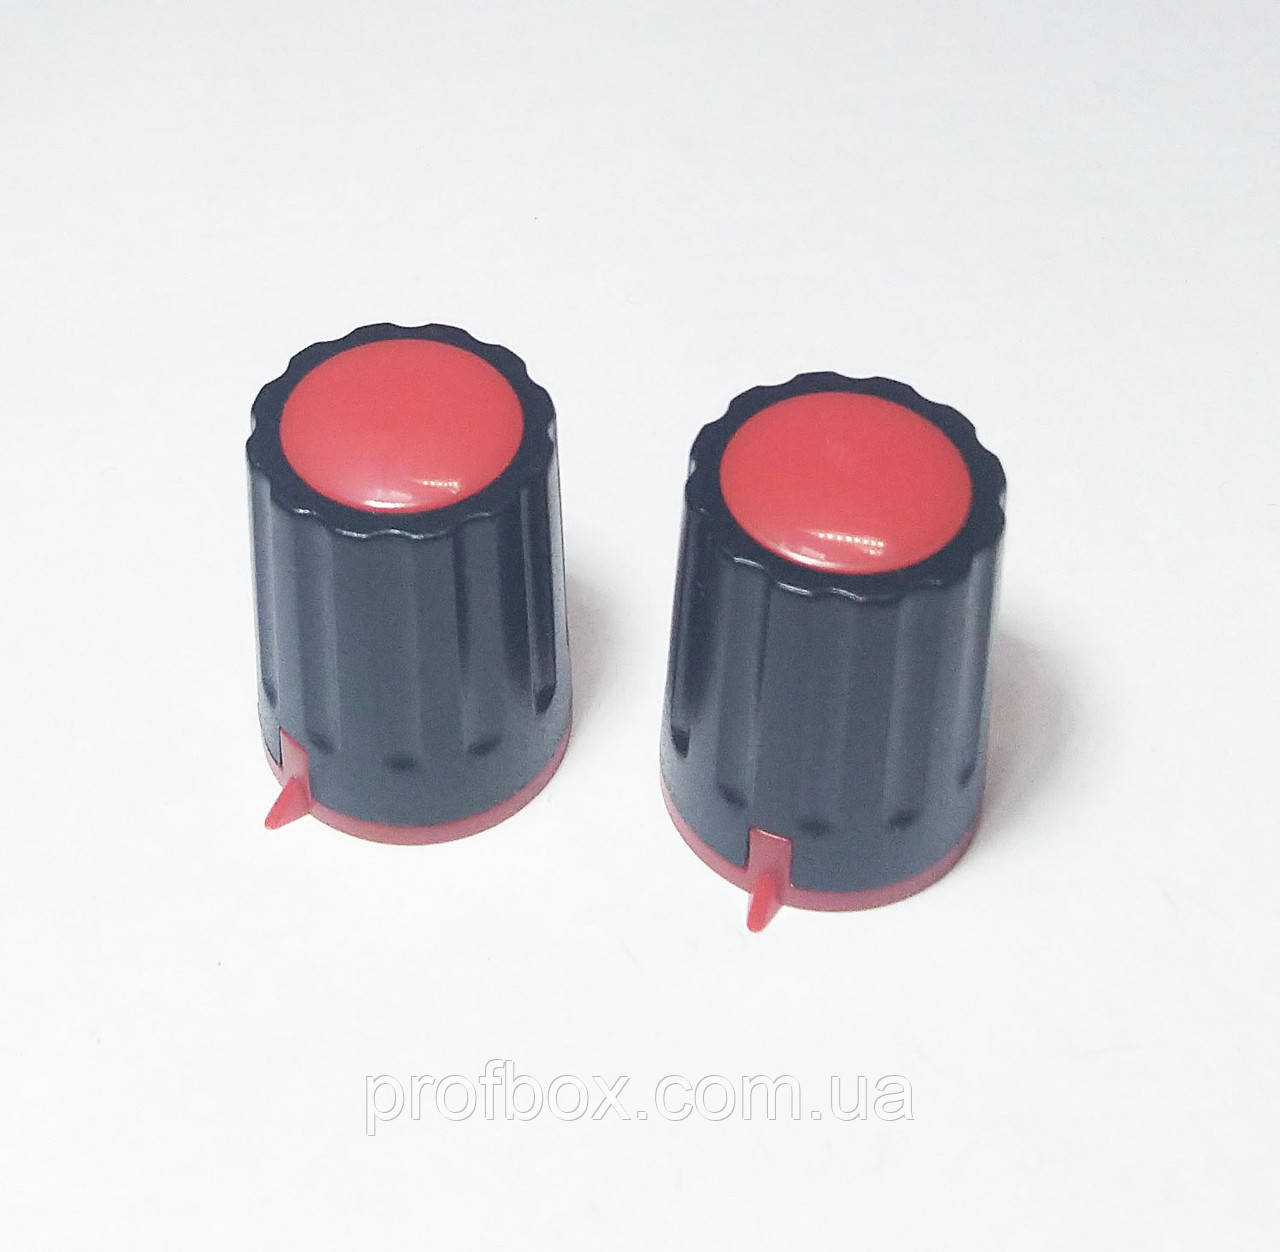 Ручка для змінного резистора R-04 чорна/червона, з покажчиком